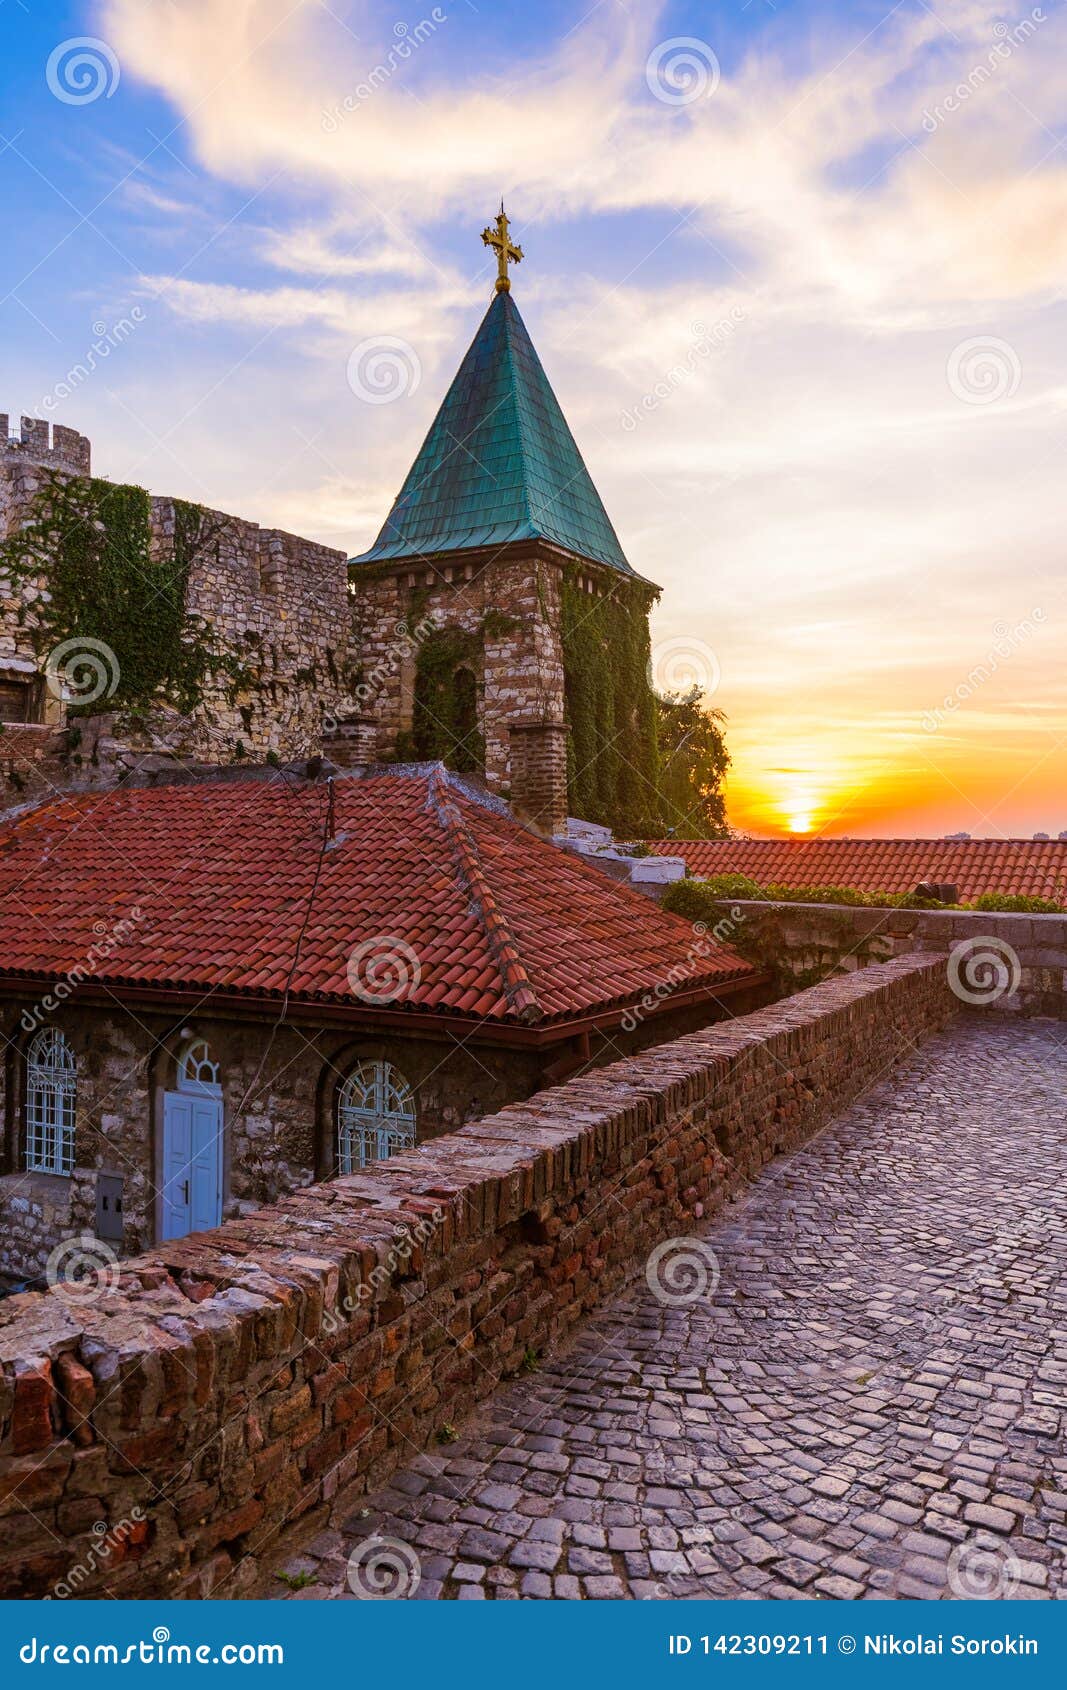 kalemegdan fortress beograd - serbia